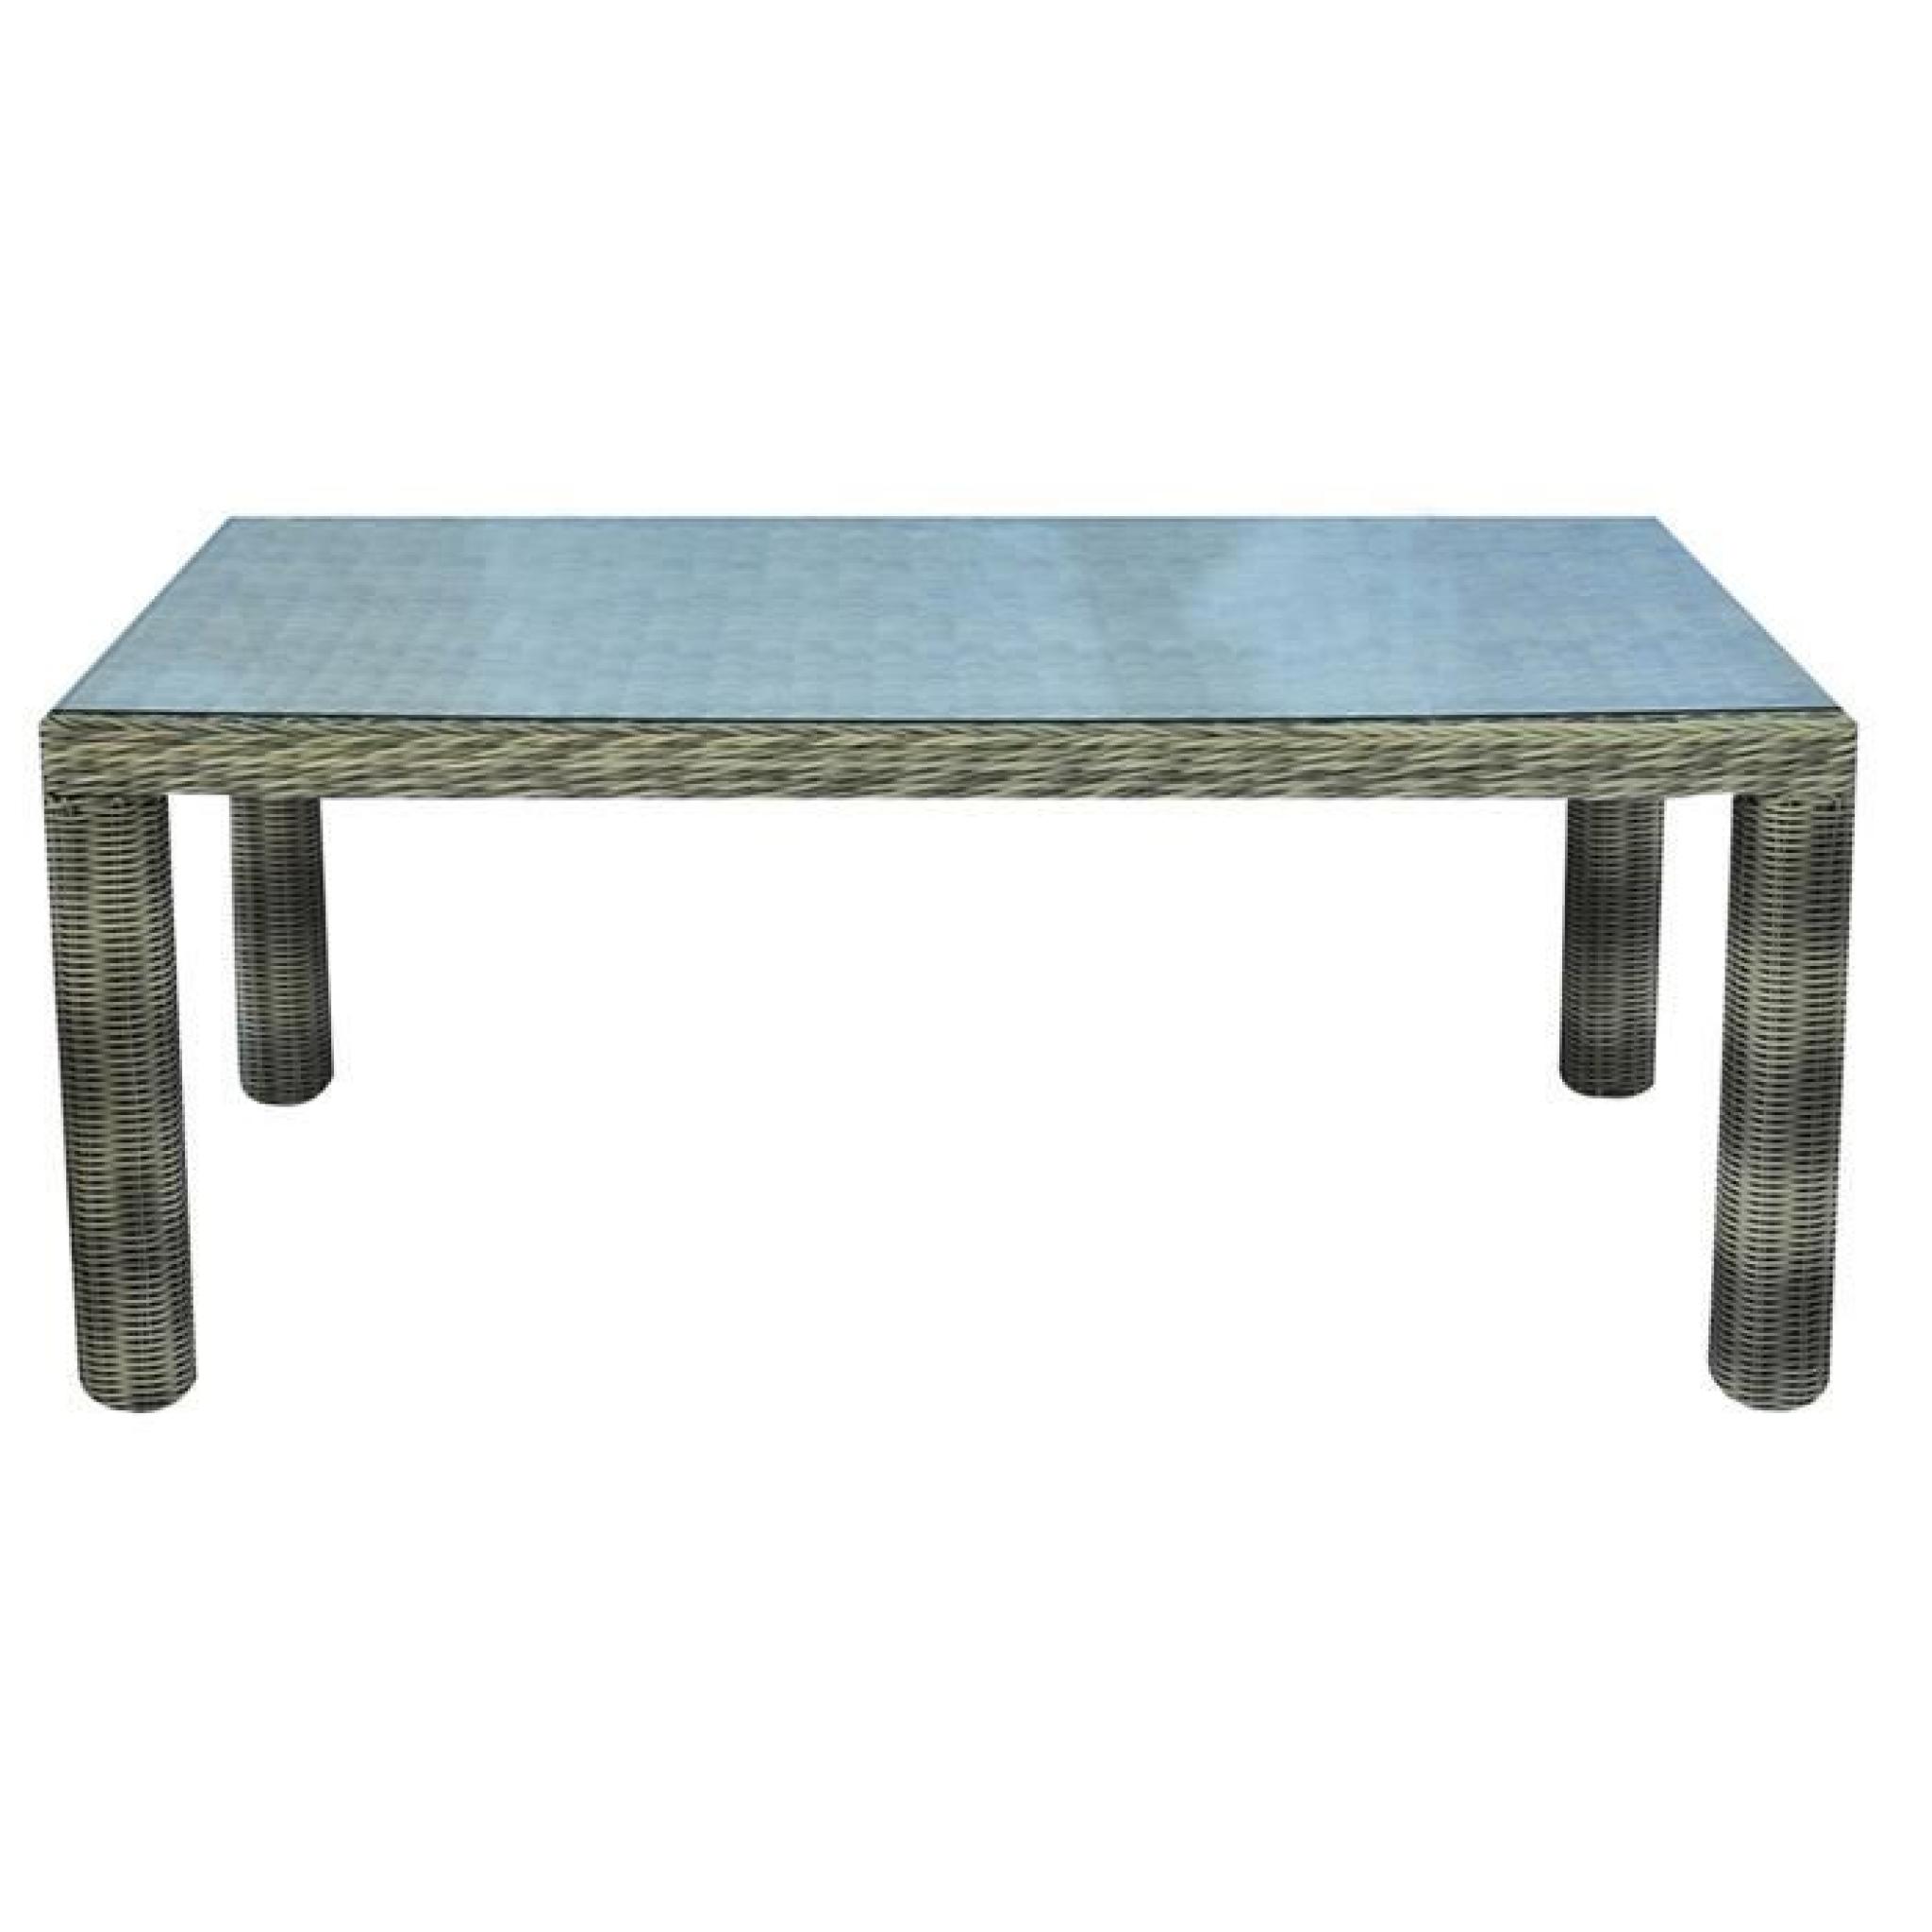 Table de jardin en aluminium et tressage Wicker Ø 5 mm - Dim : H 76 x L 180 x P 100 cm